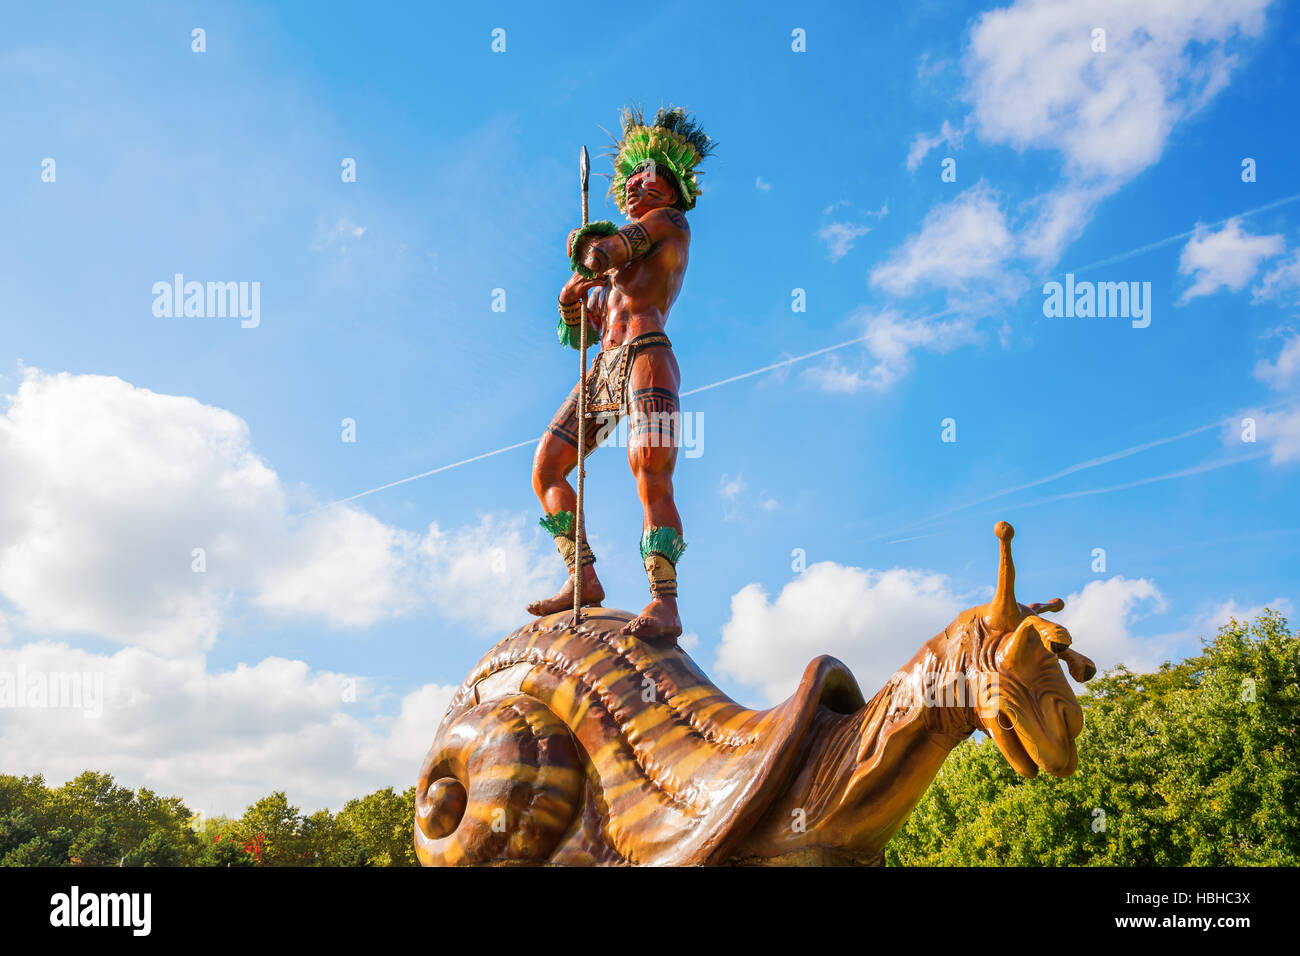 Giant sculptures in the Parc de la Villette, Paris, France Stock Photo